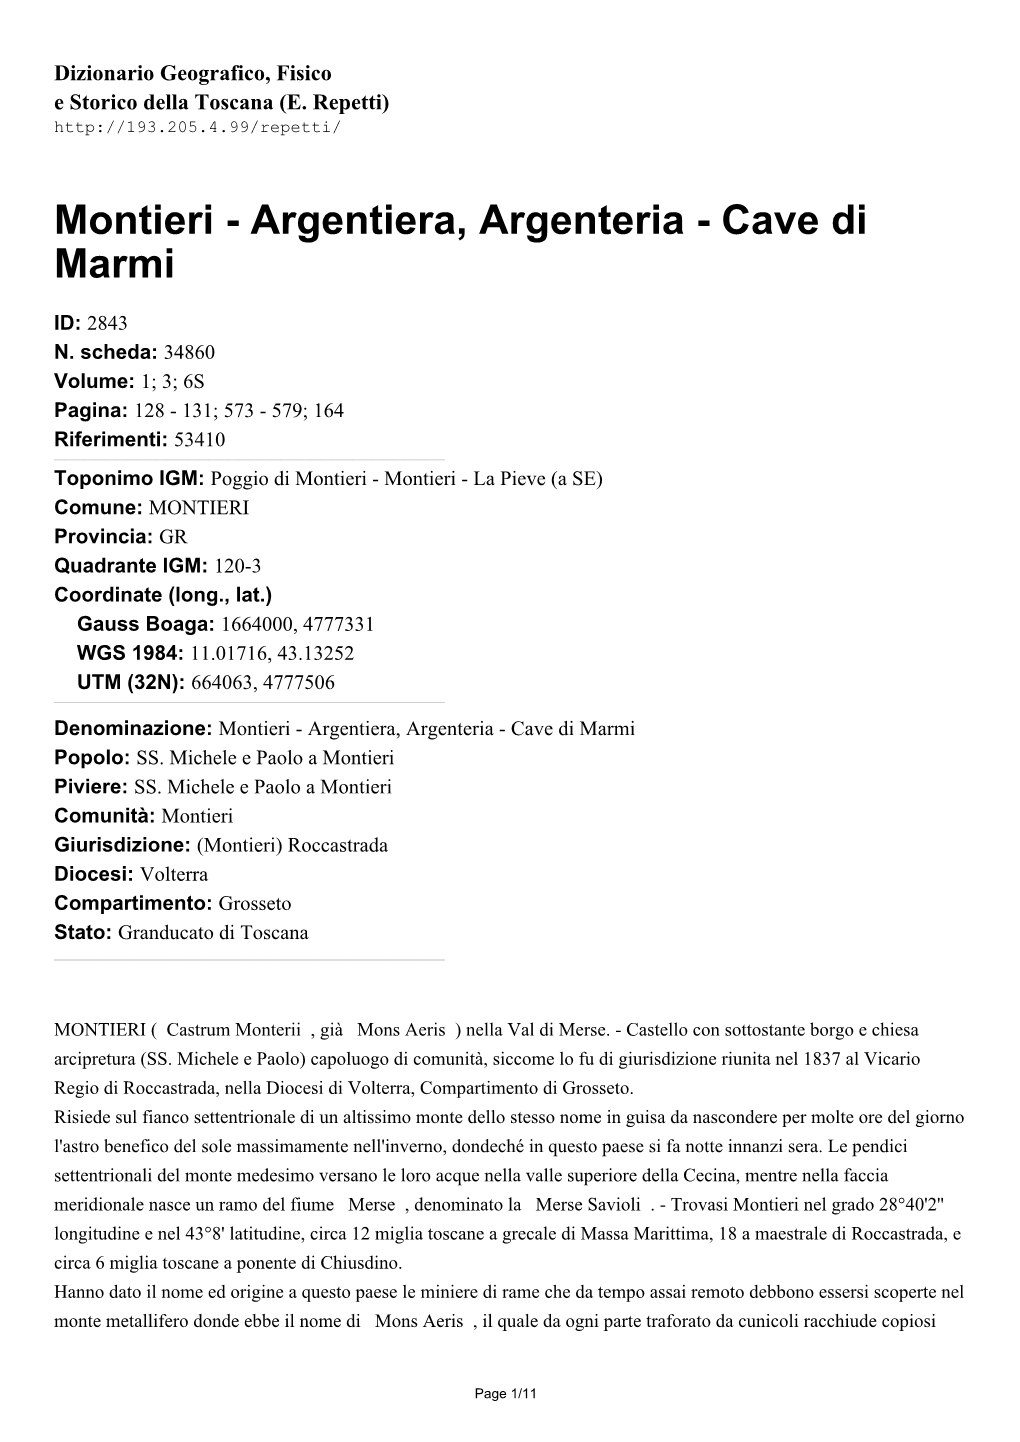 Montieri - Argentiera, Argenteria - Cave Di Marmi